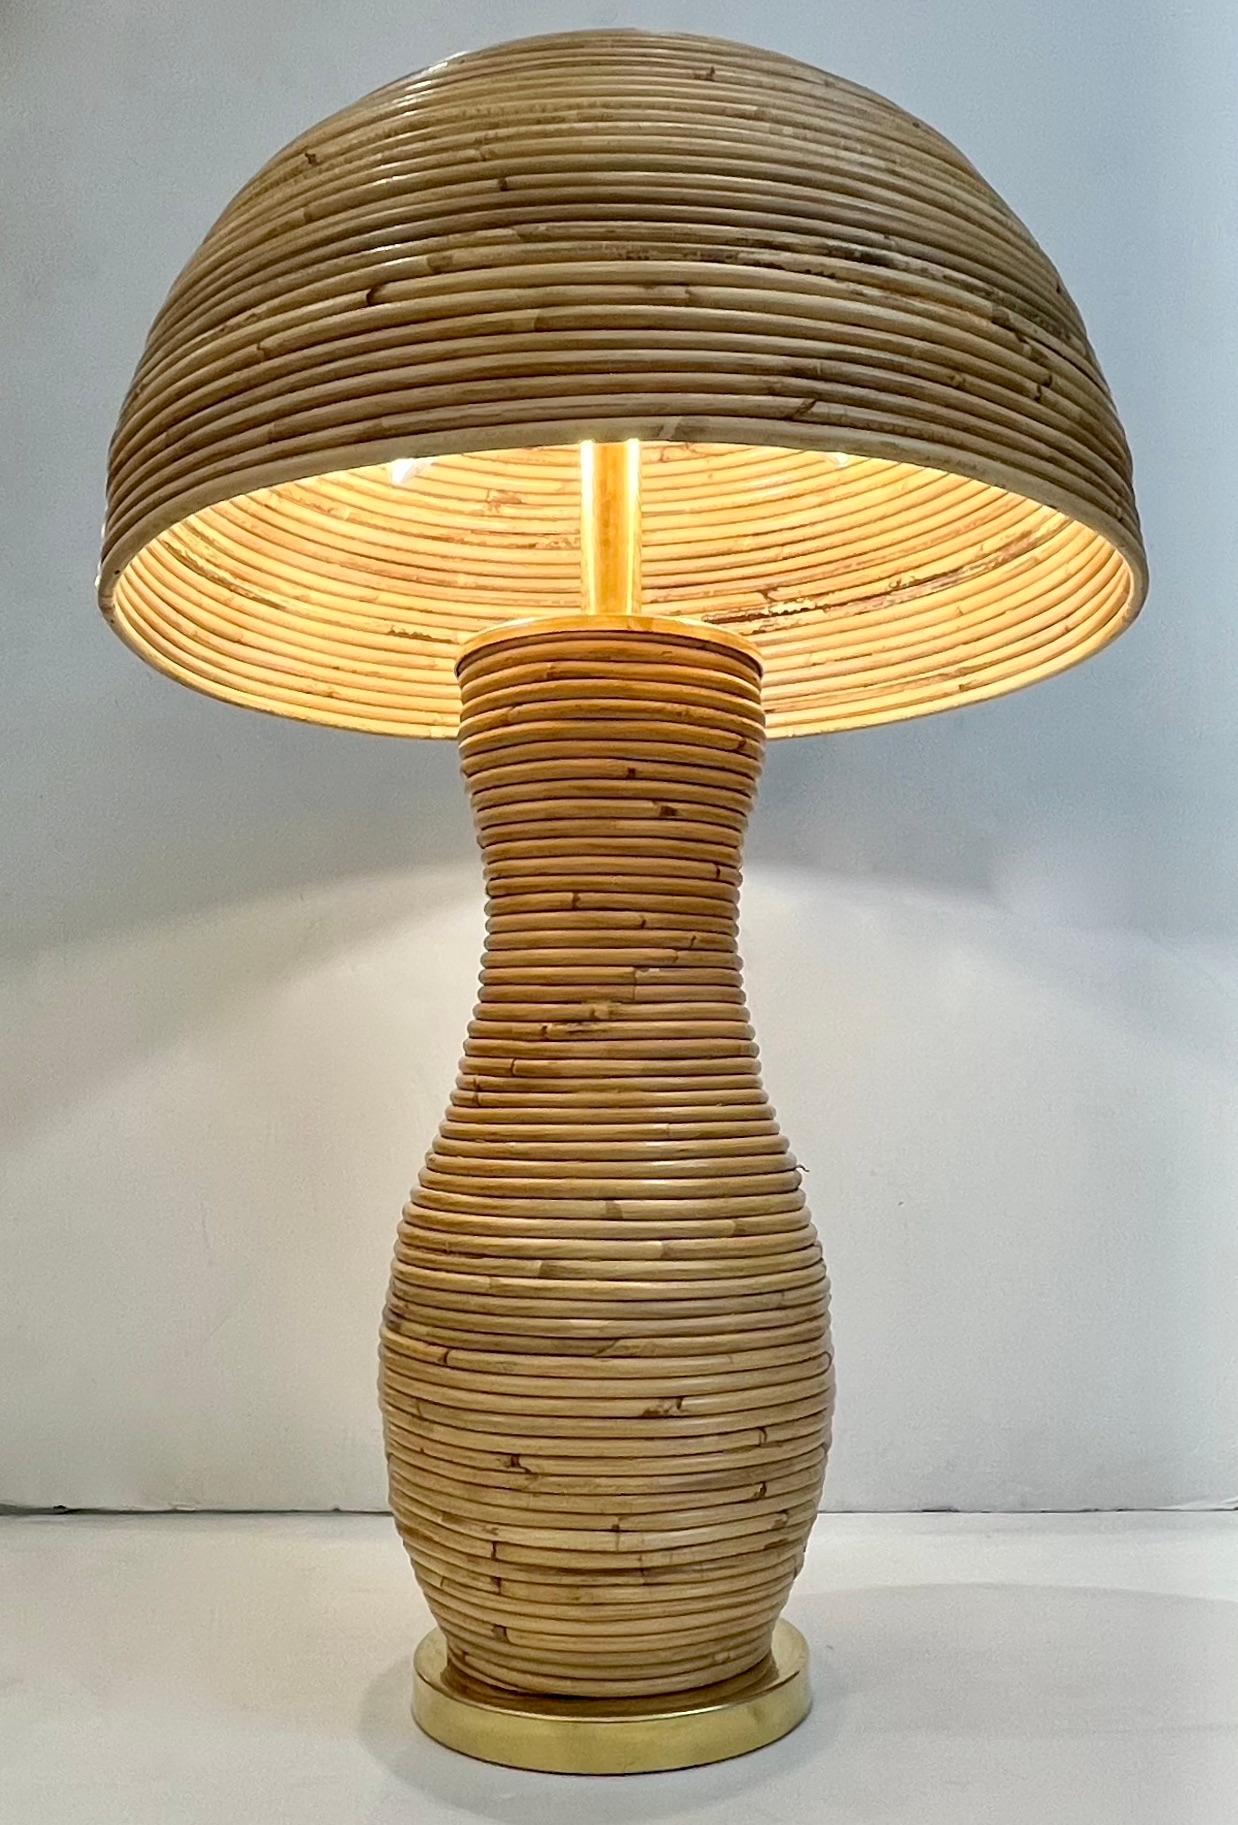 Une création contemporaine organique, entièrement réalisée à la main en Italie, une lampe à poser en bambou champignon, le corps sensuel et courbé entièrement décoré en rotin sur une base ronde en laiton et équipé d'un élégant abat-jour en demi-lune